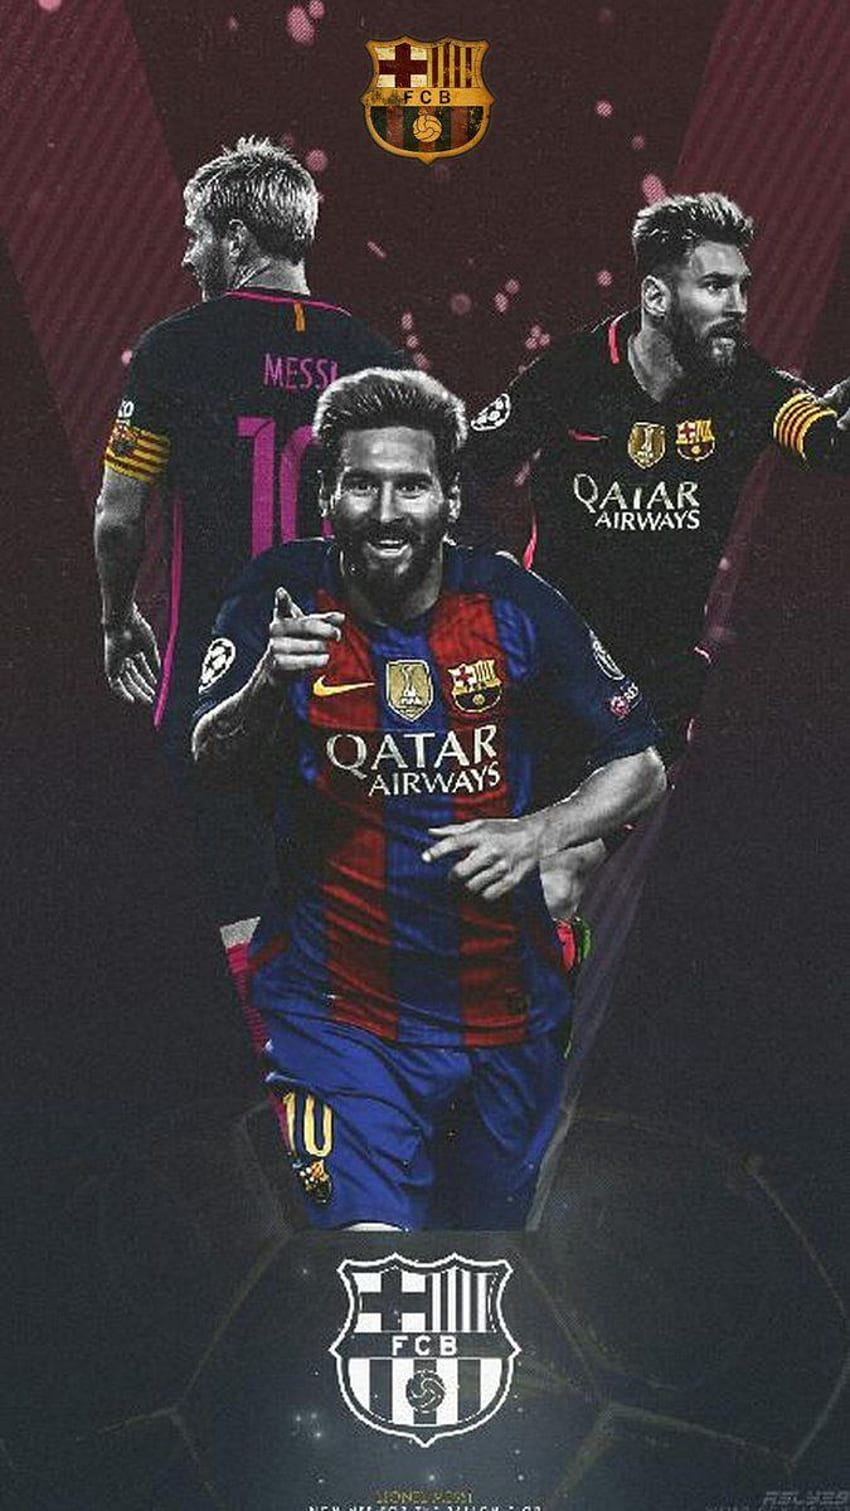 Messi và Barcelona là một cặp đôi hoàn hảo trong bóng đá thế giới. Hãy khám phá bộ sưu tập hình nền đầy chất lượng với hình ảnh Messi trên chiếc iPhone sang trọng của bạn. Cùng cảm nhận sự phong độ và tài năng của ngôi sao này trên cùng màn hình điện thoại của bạn!